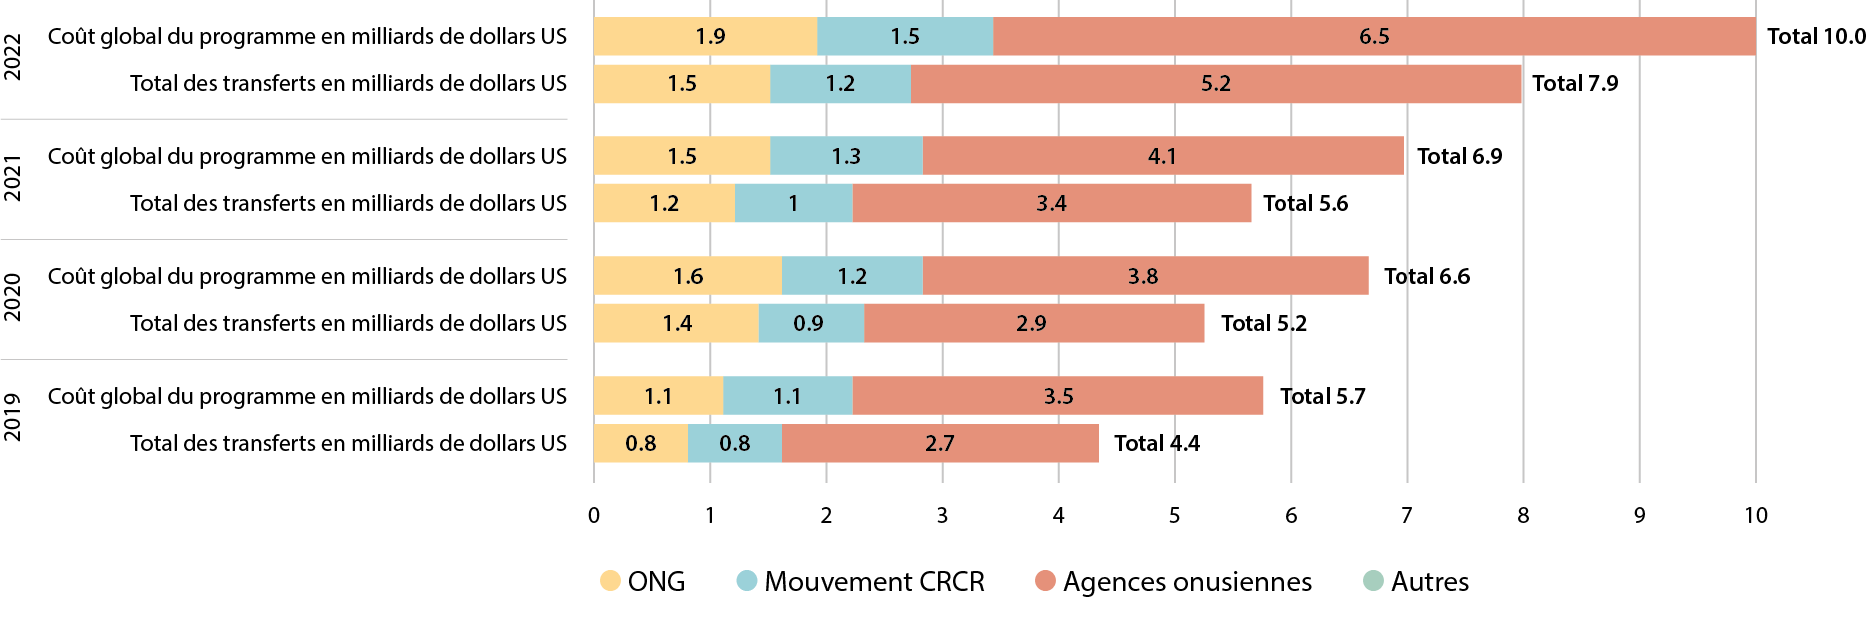 Graphique à barres intitulé "Graphique 2.3 pourcentage de TM par type d'organisation" présentant la distribution en pourcentage des transferts monétaires par les ONG, le Mouvement RCRC et les agences de l'ONU de 2017 à 2022. Chaque année est représentée par un groupe de trois barres verticales, chaque barre étant codée par couleur pour représenter un type d'organisation : ONG en orange, Mouvement RCRC en sarcelle, et Agences des Nations Unies en rose. Les pourcentages pour les ONG montrent une tendance générale à la hausse, passant de 52% en 2017 à 66% en 2022. Les pourcentages du Mouvement RCRC sont relativement stables, avec une légère diminution de 24% en 2017 à 15% en 2022. Les pourcentages des agences de l'ONU connaissent des fluctuations mineures mais restent autour de 19% à 22% tout au long des années. Le pourcentage le plus élevé enregistré est de 66% pour les ONG en 2022, et le plus bas est de 15% pour le Mouvement RCRC la même année.